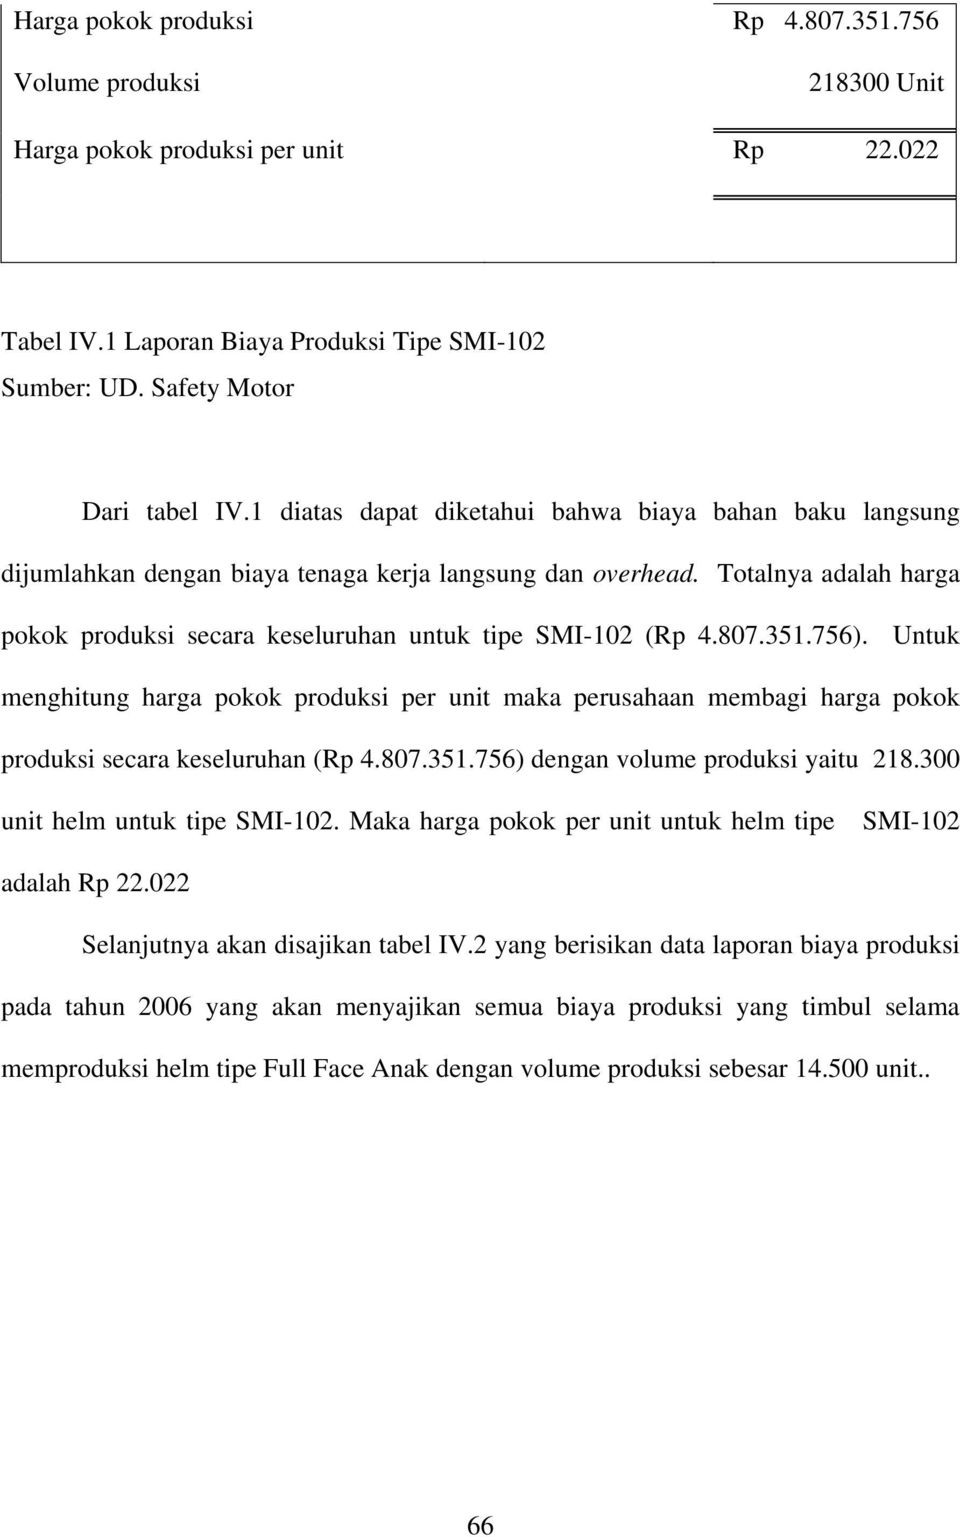 807.351.756). Untuk menghitung harga pokok produksi per unit maka perusahaan membagi harga pokok produksi secara keseluruhan (Rp 4.807.351.756) dengan volume produksi yaitu 218.